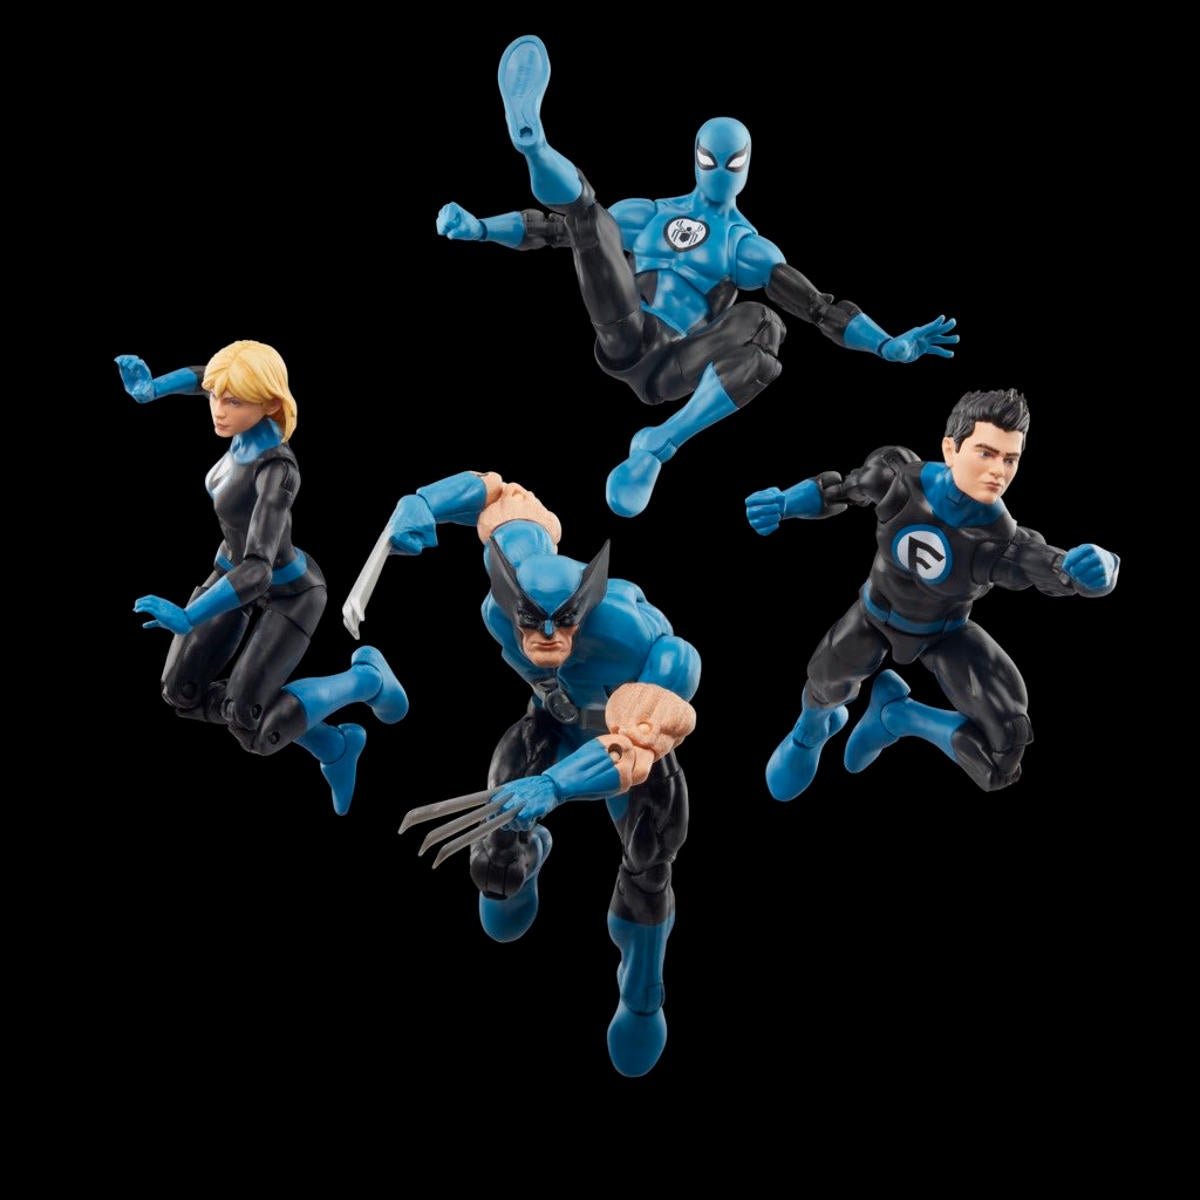 Marvel Legends Fantastic Four Wolverine and Spider-Man 2-Pack Pre